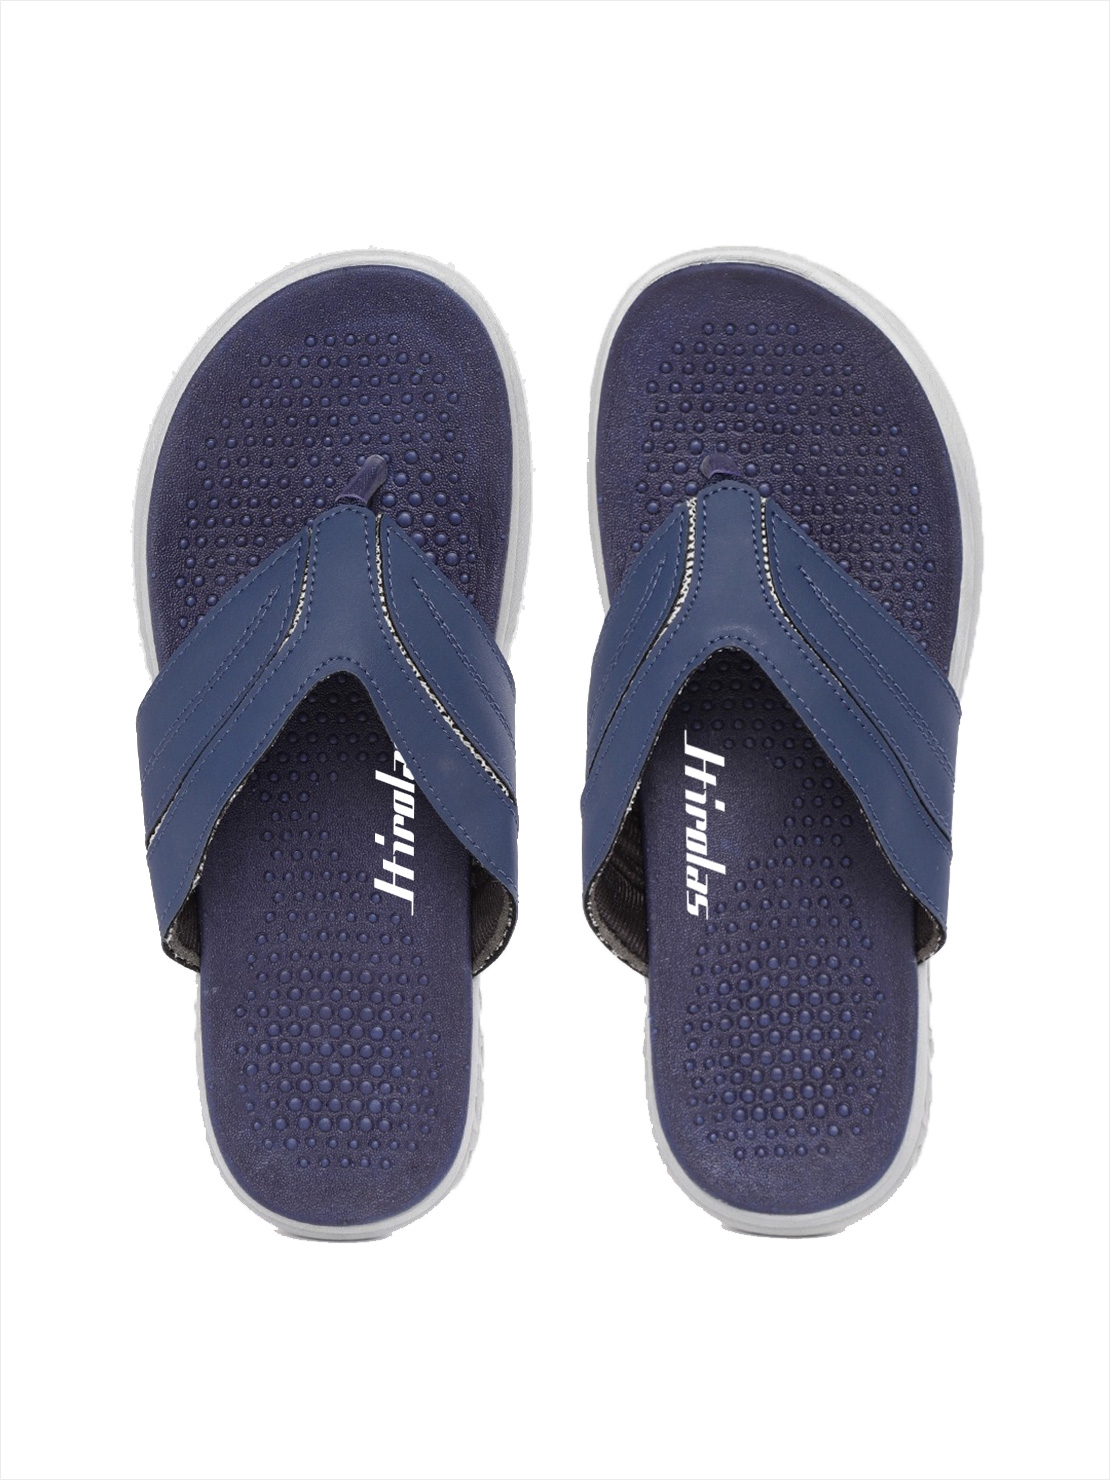 Hirolas | Hirolas® CLOUDWALK | Bounce Back Technology | Slippers for Men - Blue